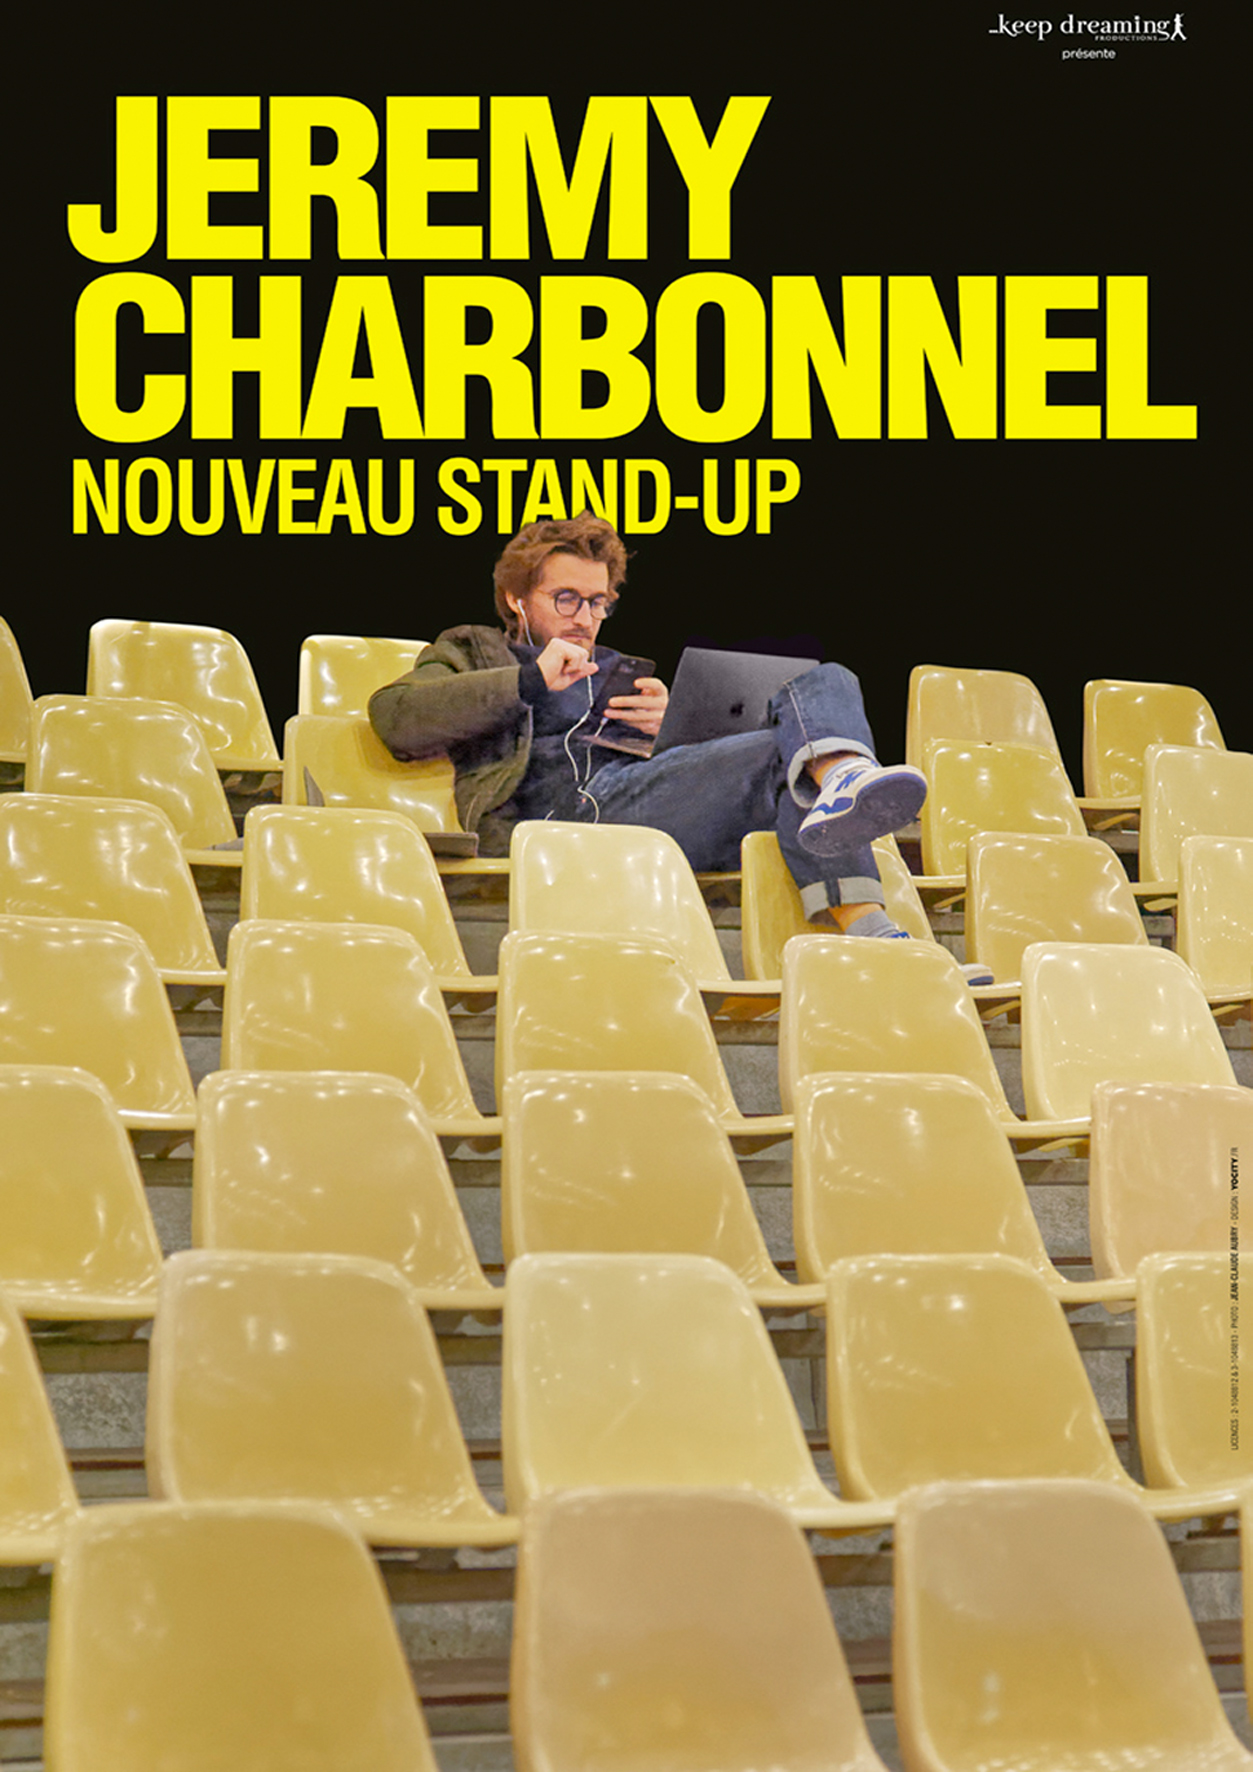 Jérémy Charbonnel Nouveau Stand-Up